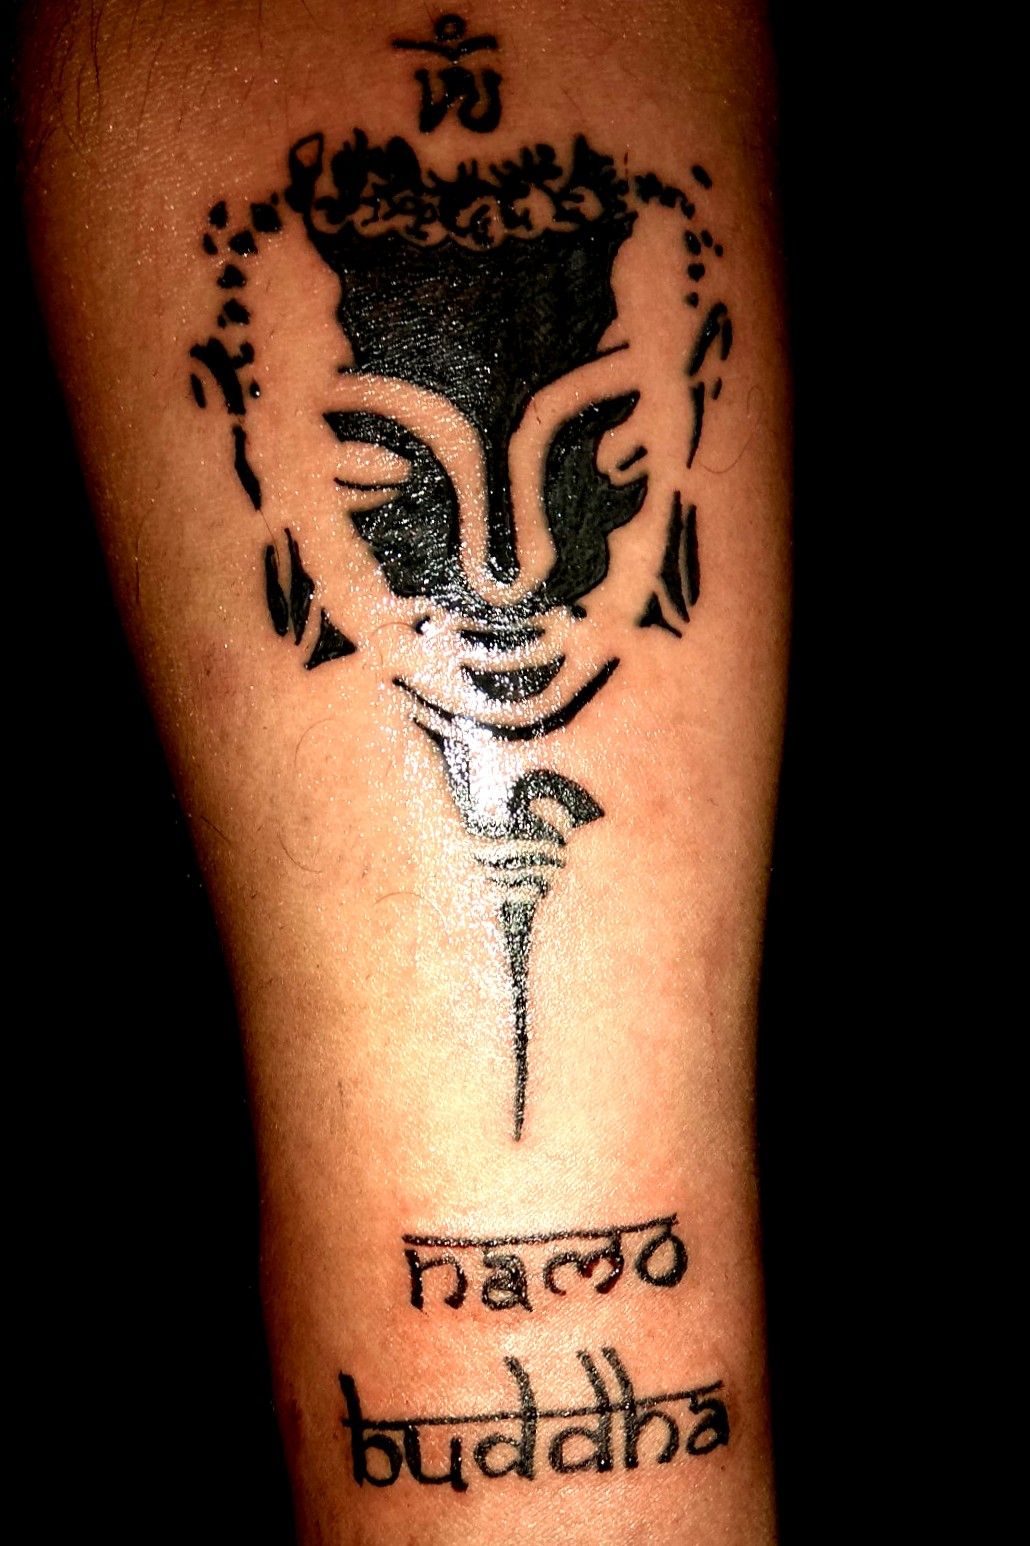 Bhuddha tattoo